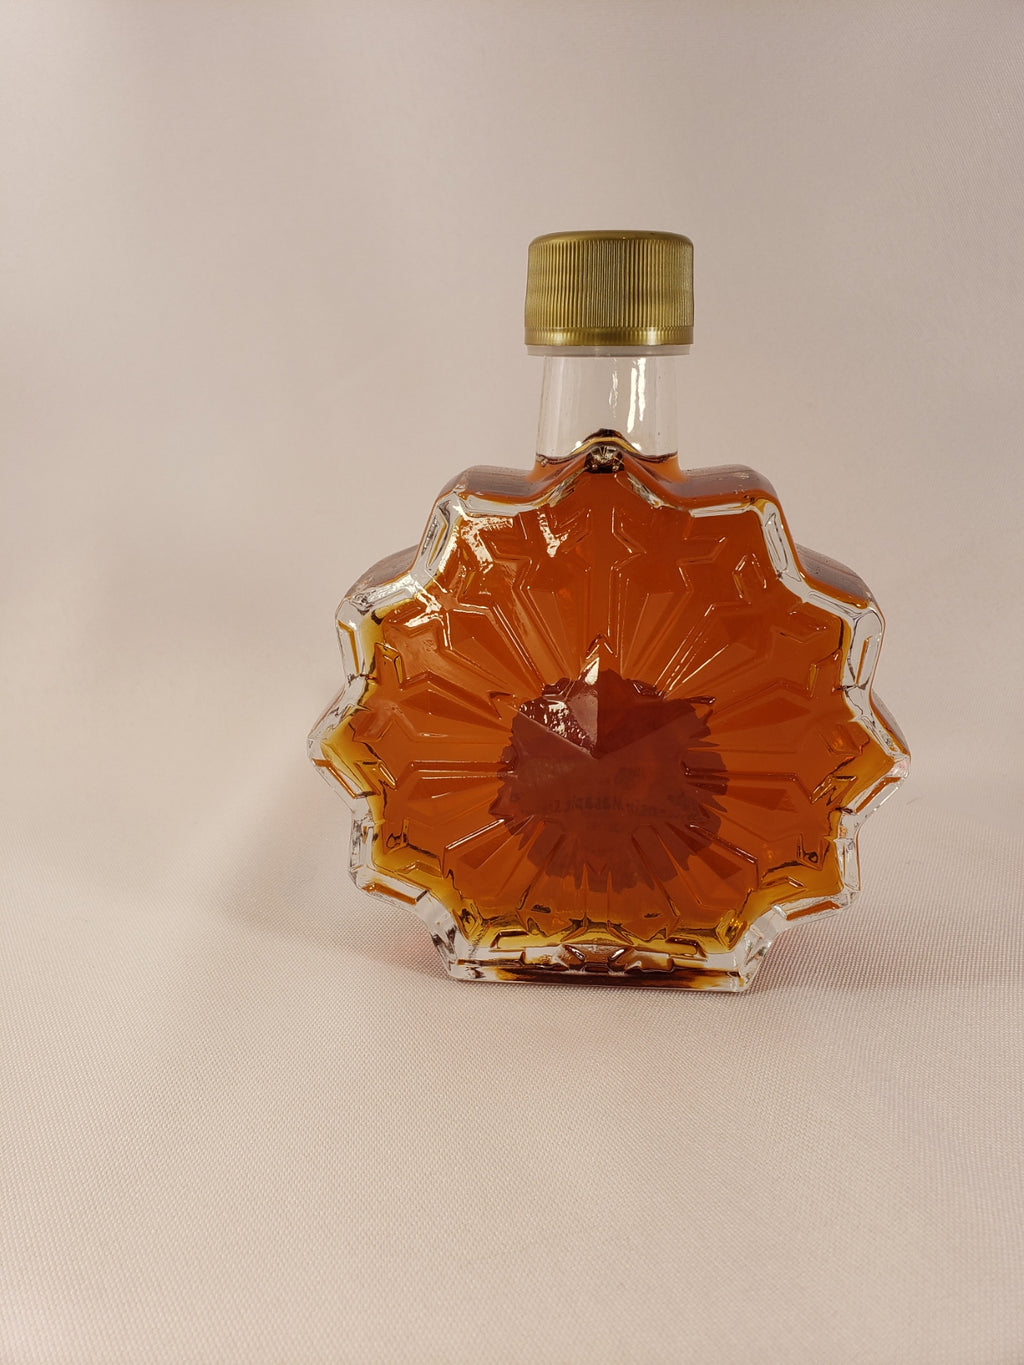 12 oz Maple Syrup Gingerbread Man Bottle Returning Item New Design